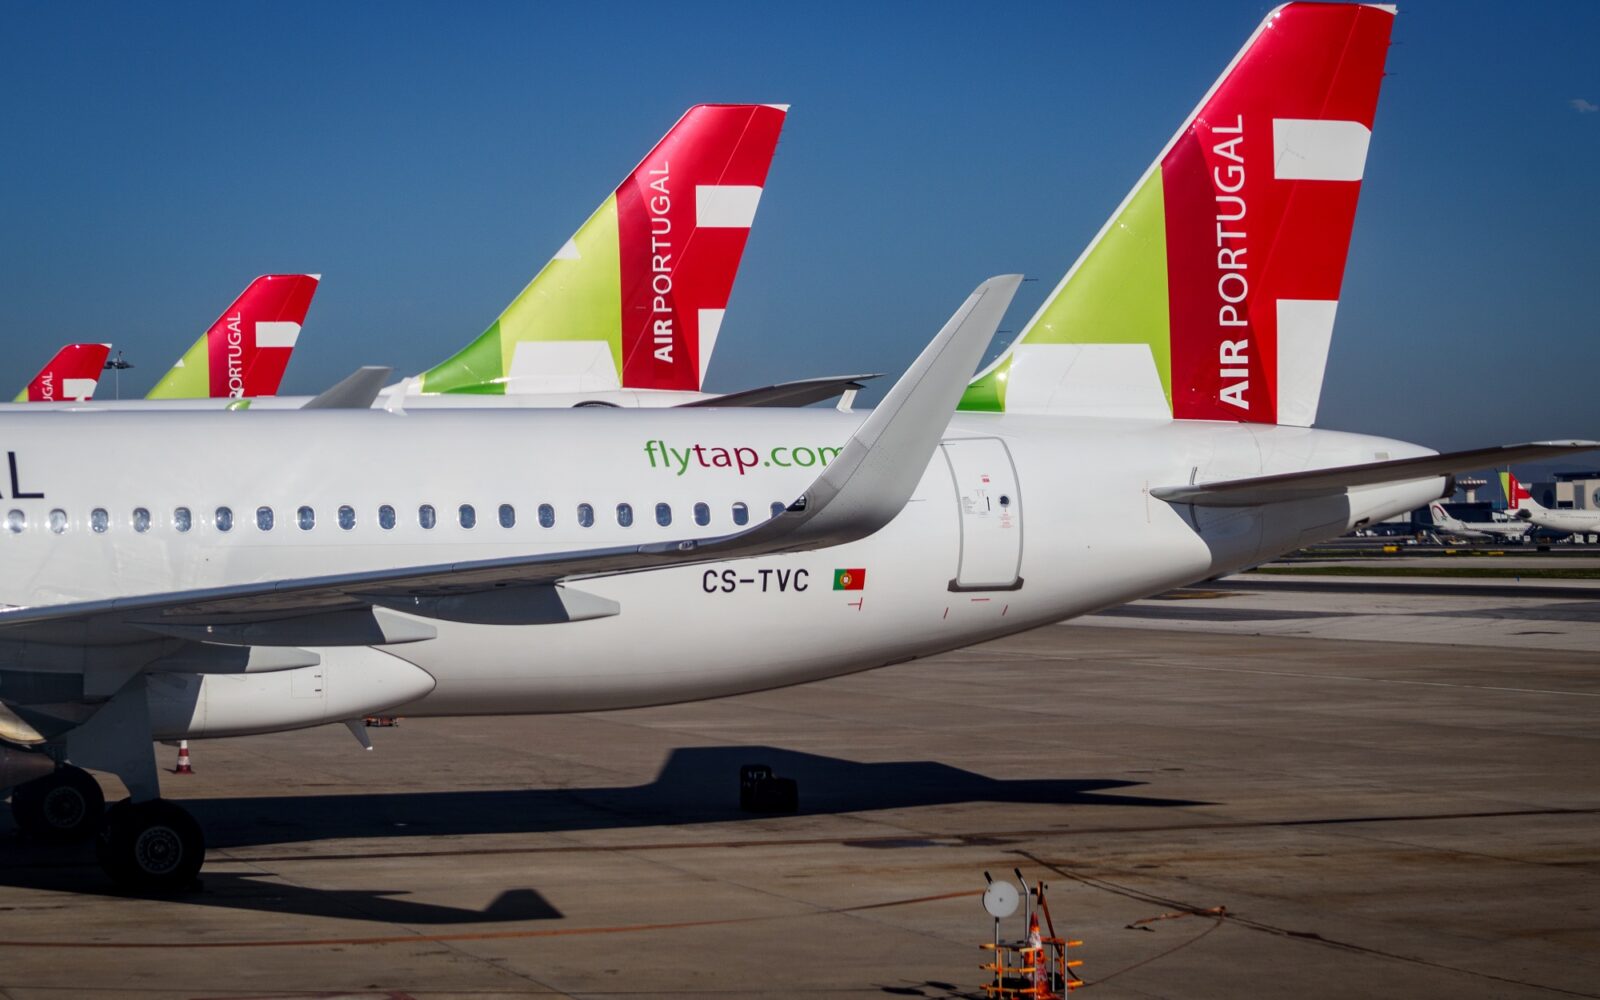 Portugalská vláda hodlá zprivatizovat aerolinku TAP